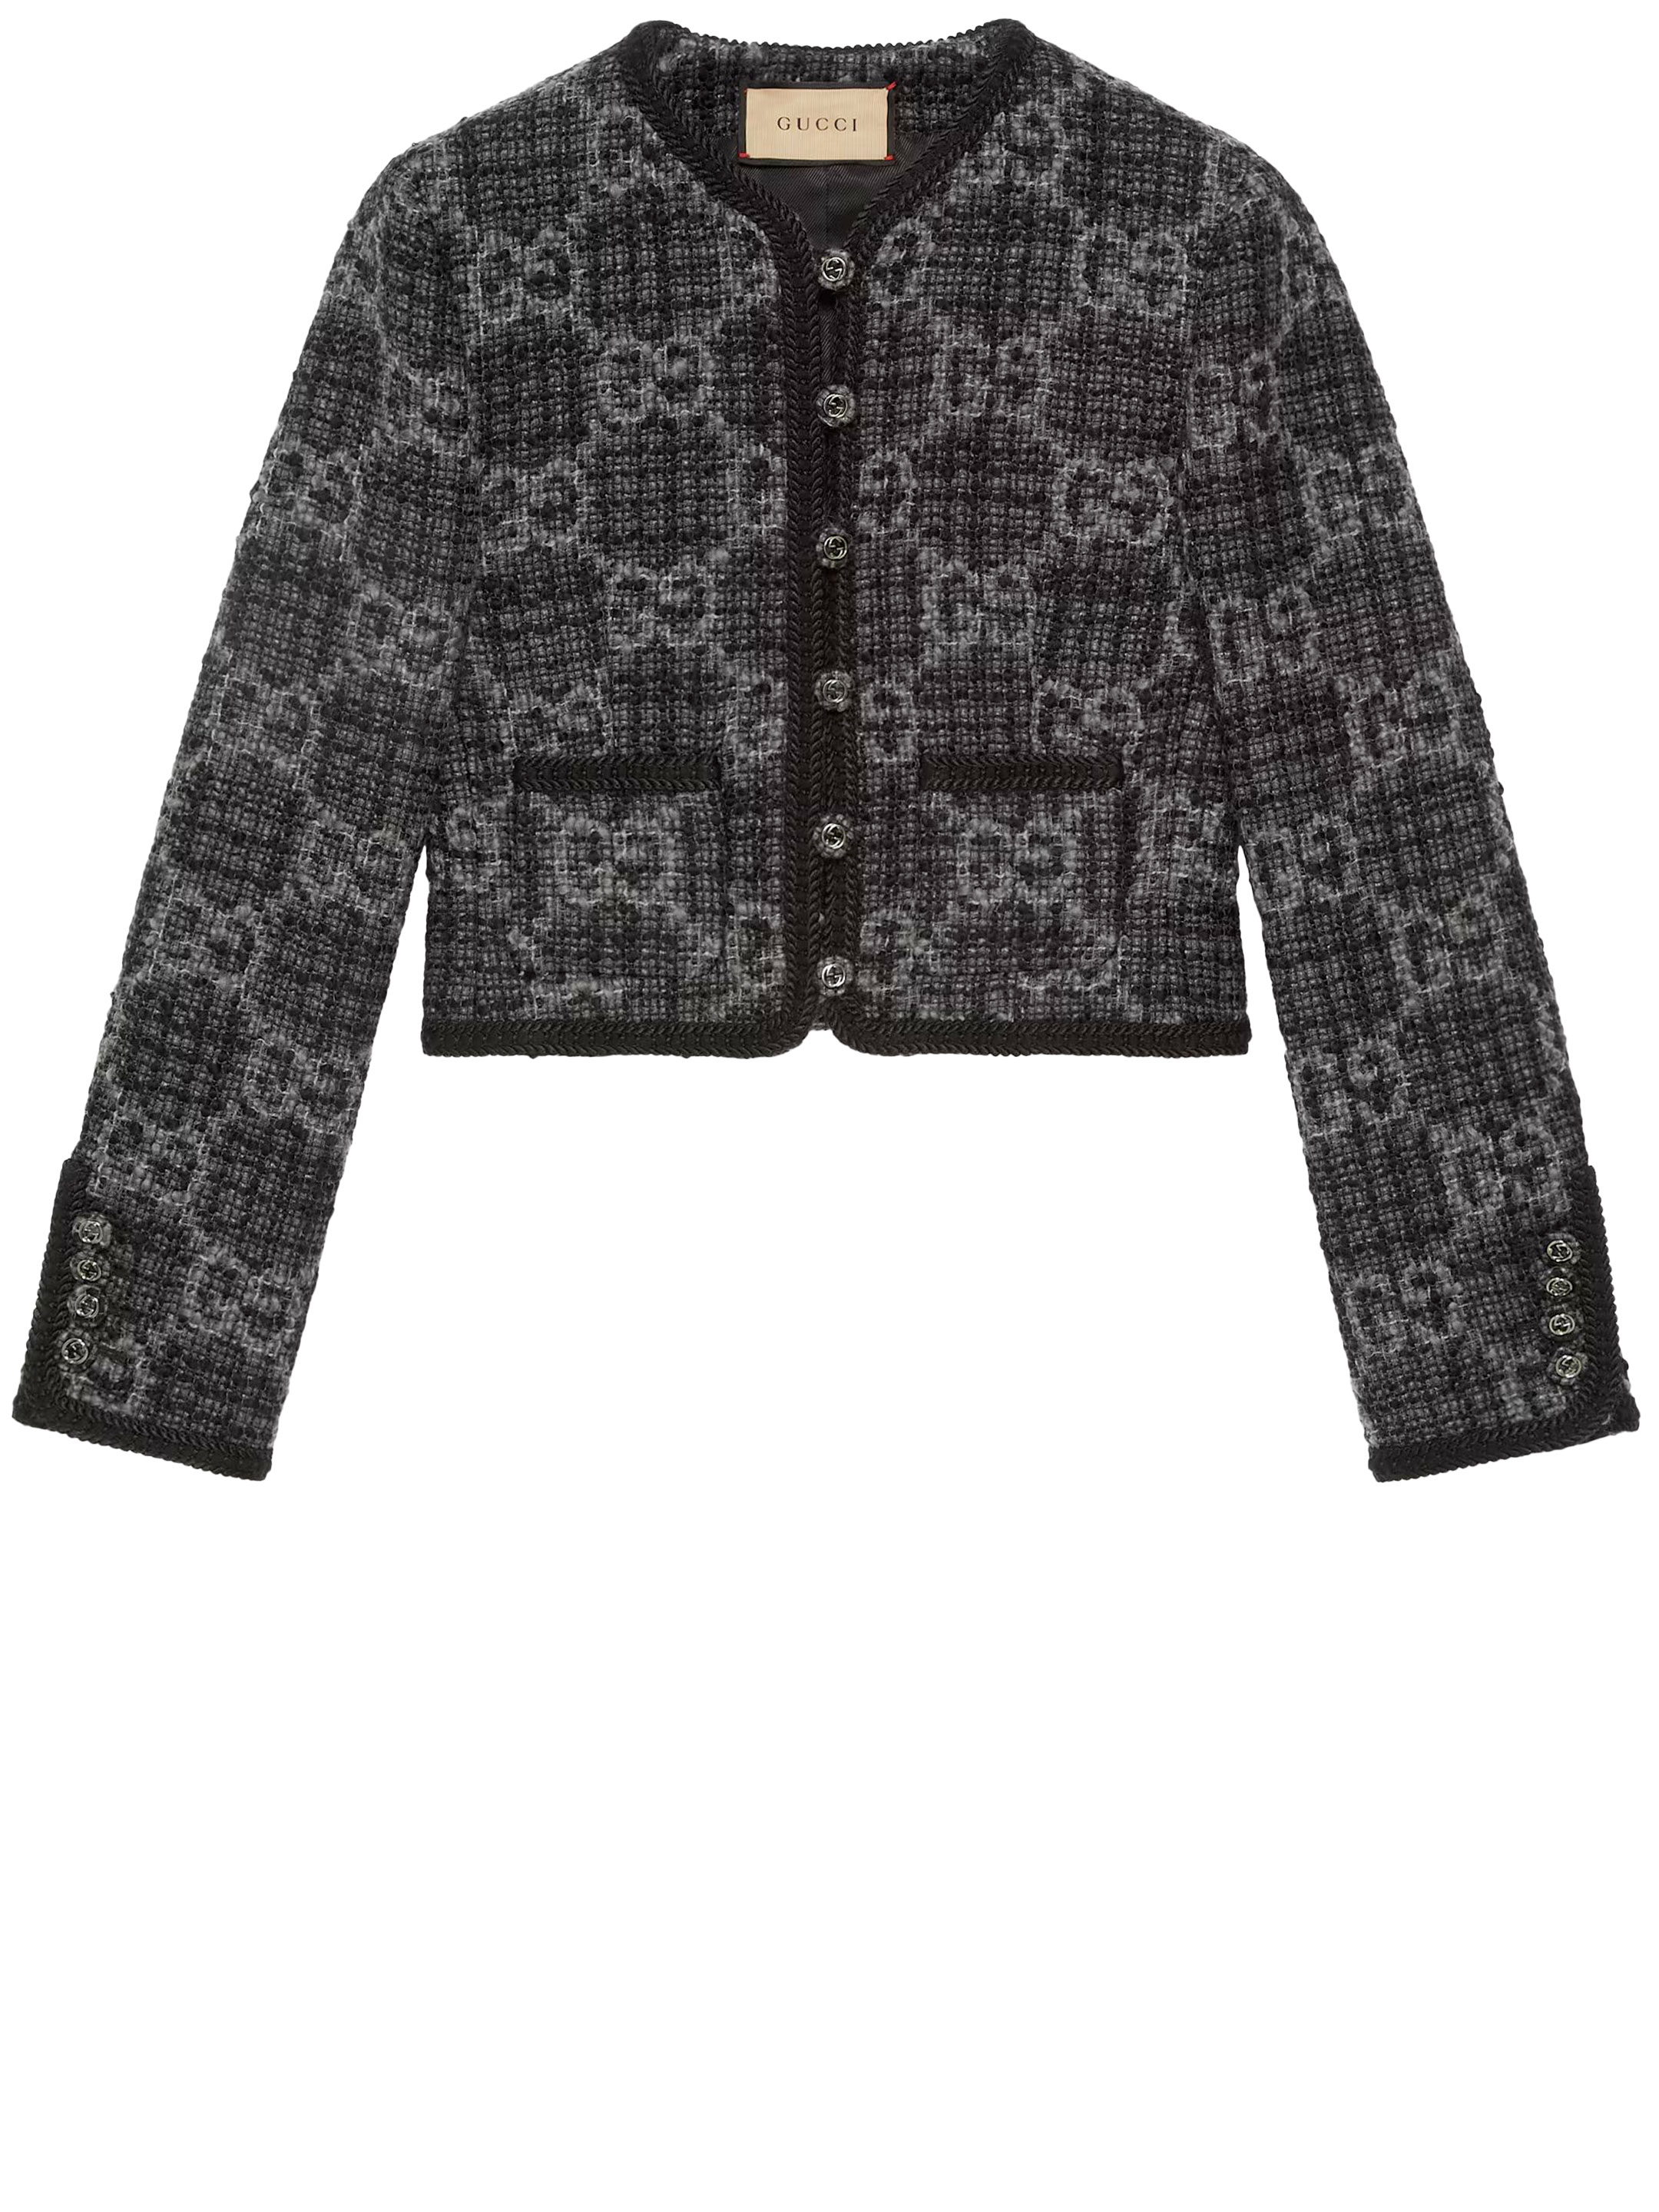 Куртка Gucci GG tweed, серый жакет на пуговицах с кружевной отделкой